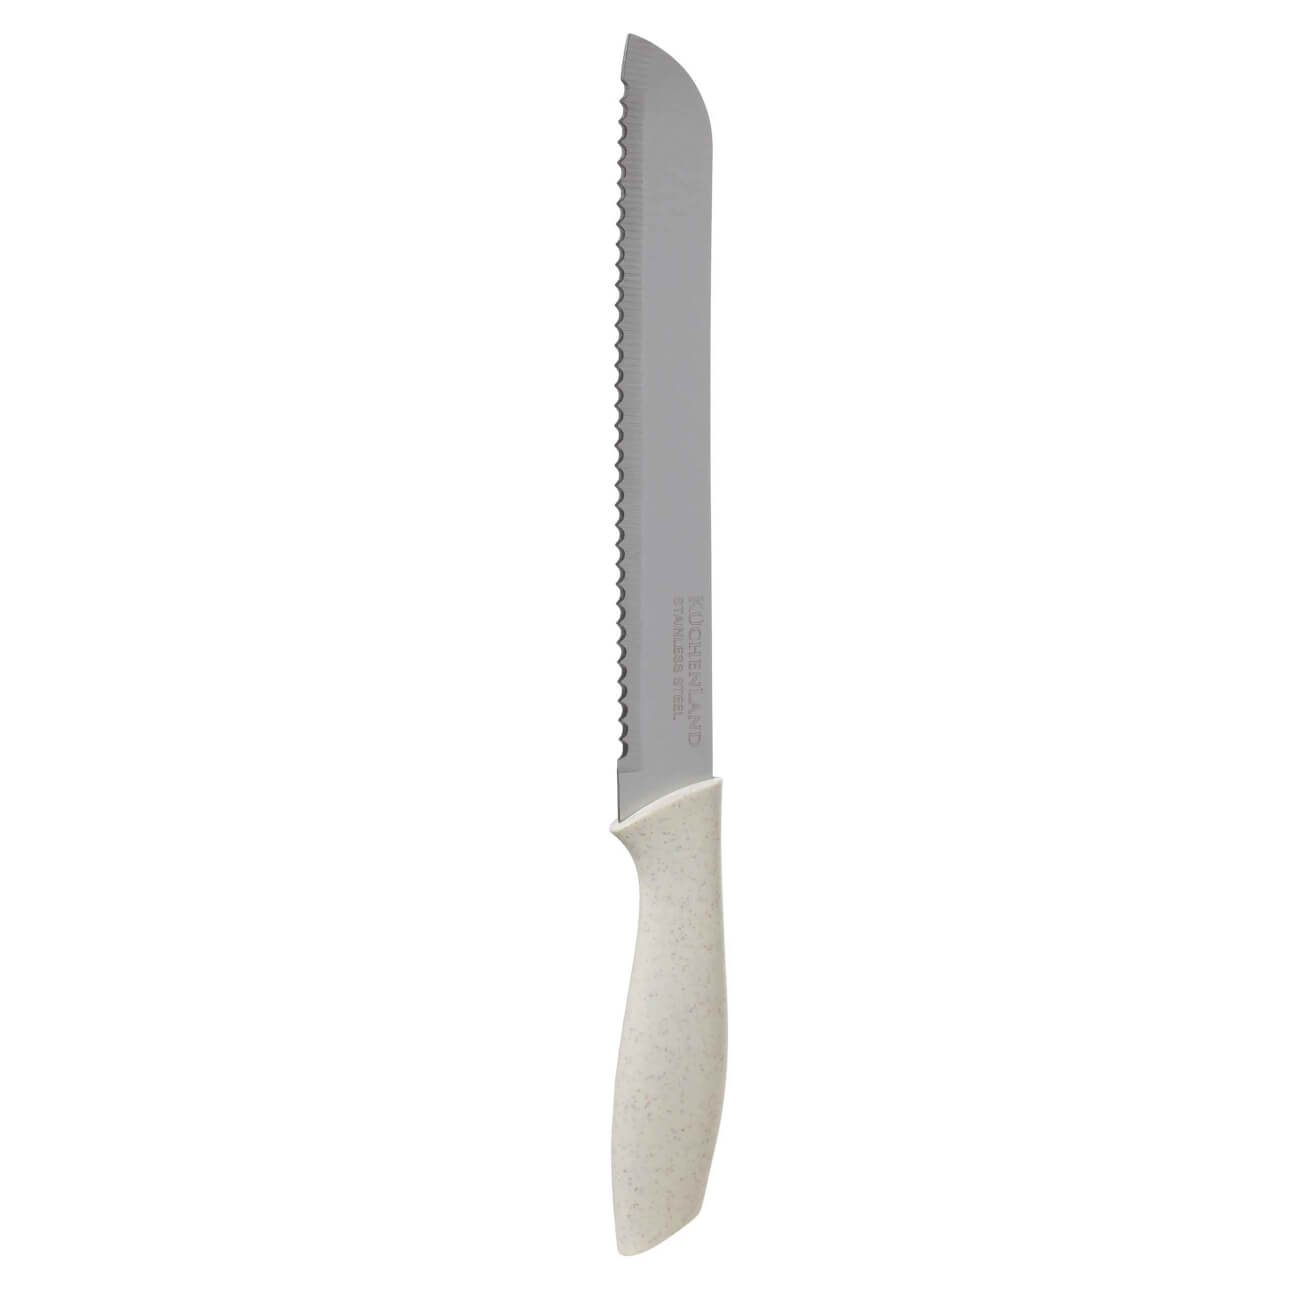 Нож хлебный, 20 см, сталь/пластик, молочный, Speck-light нож поварской 20 см сталь пластик молочный speck light